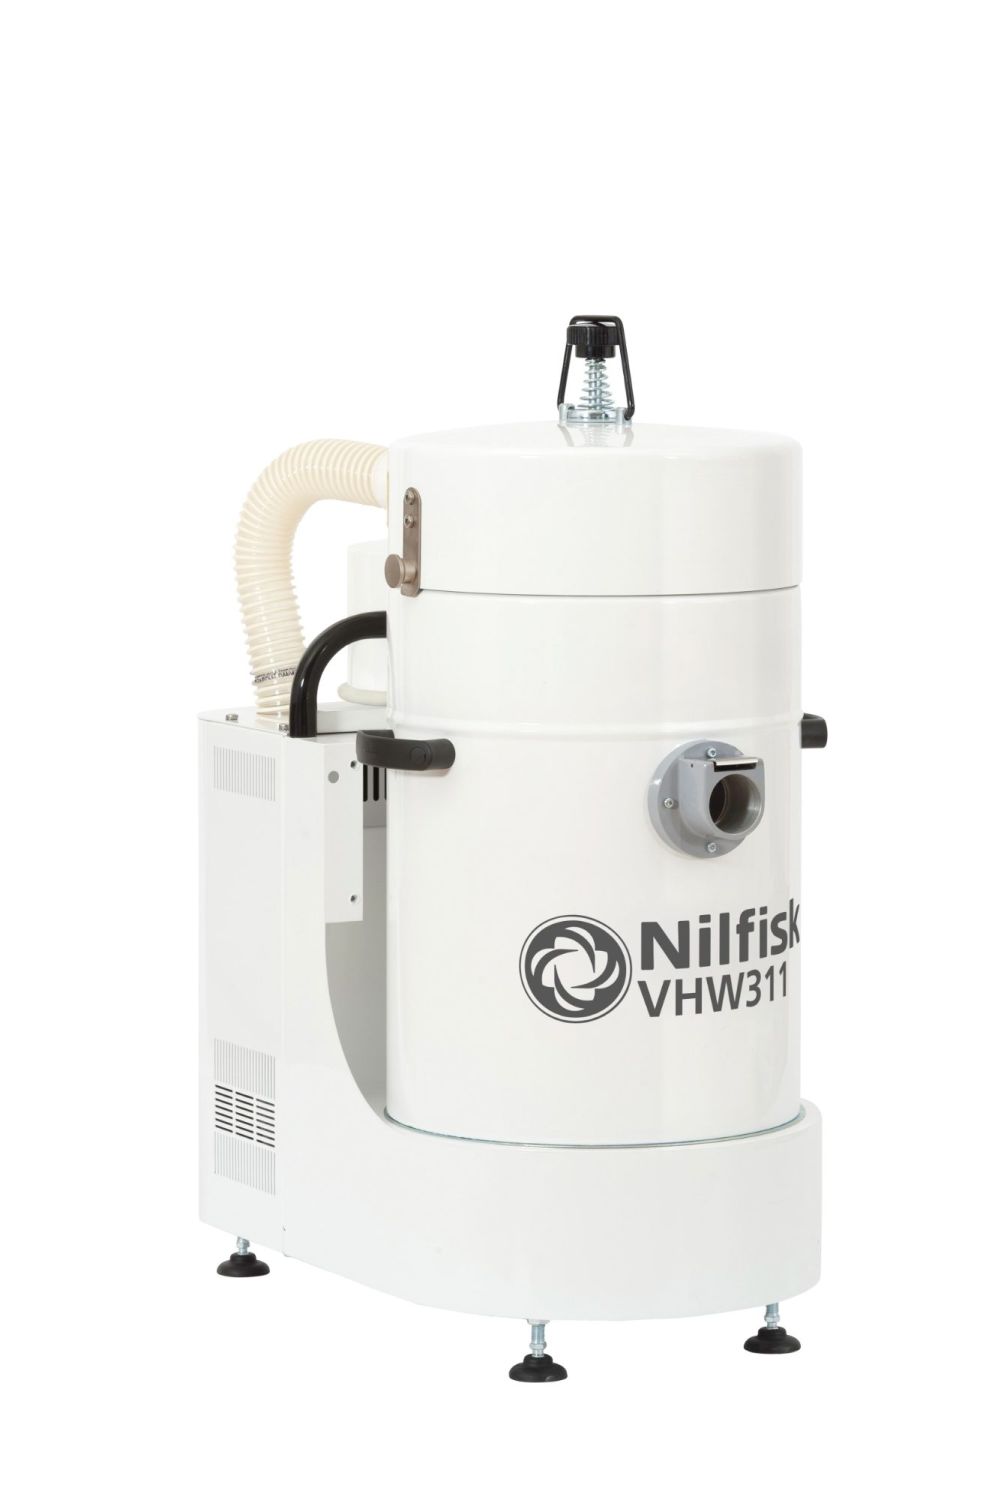 Nilfisk VHW311 Industrial Vacuum